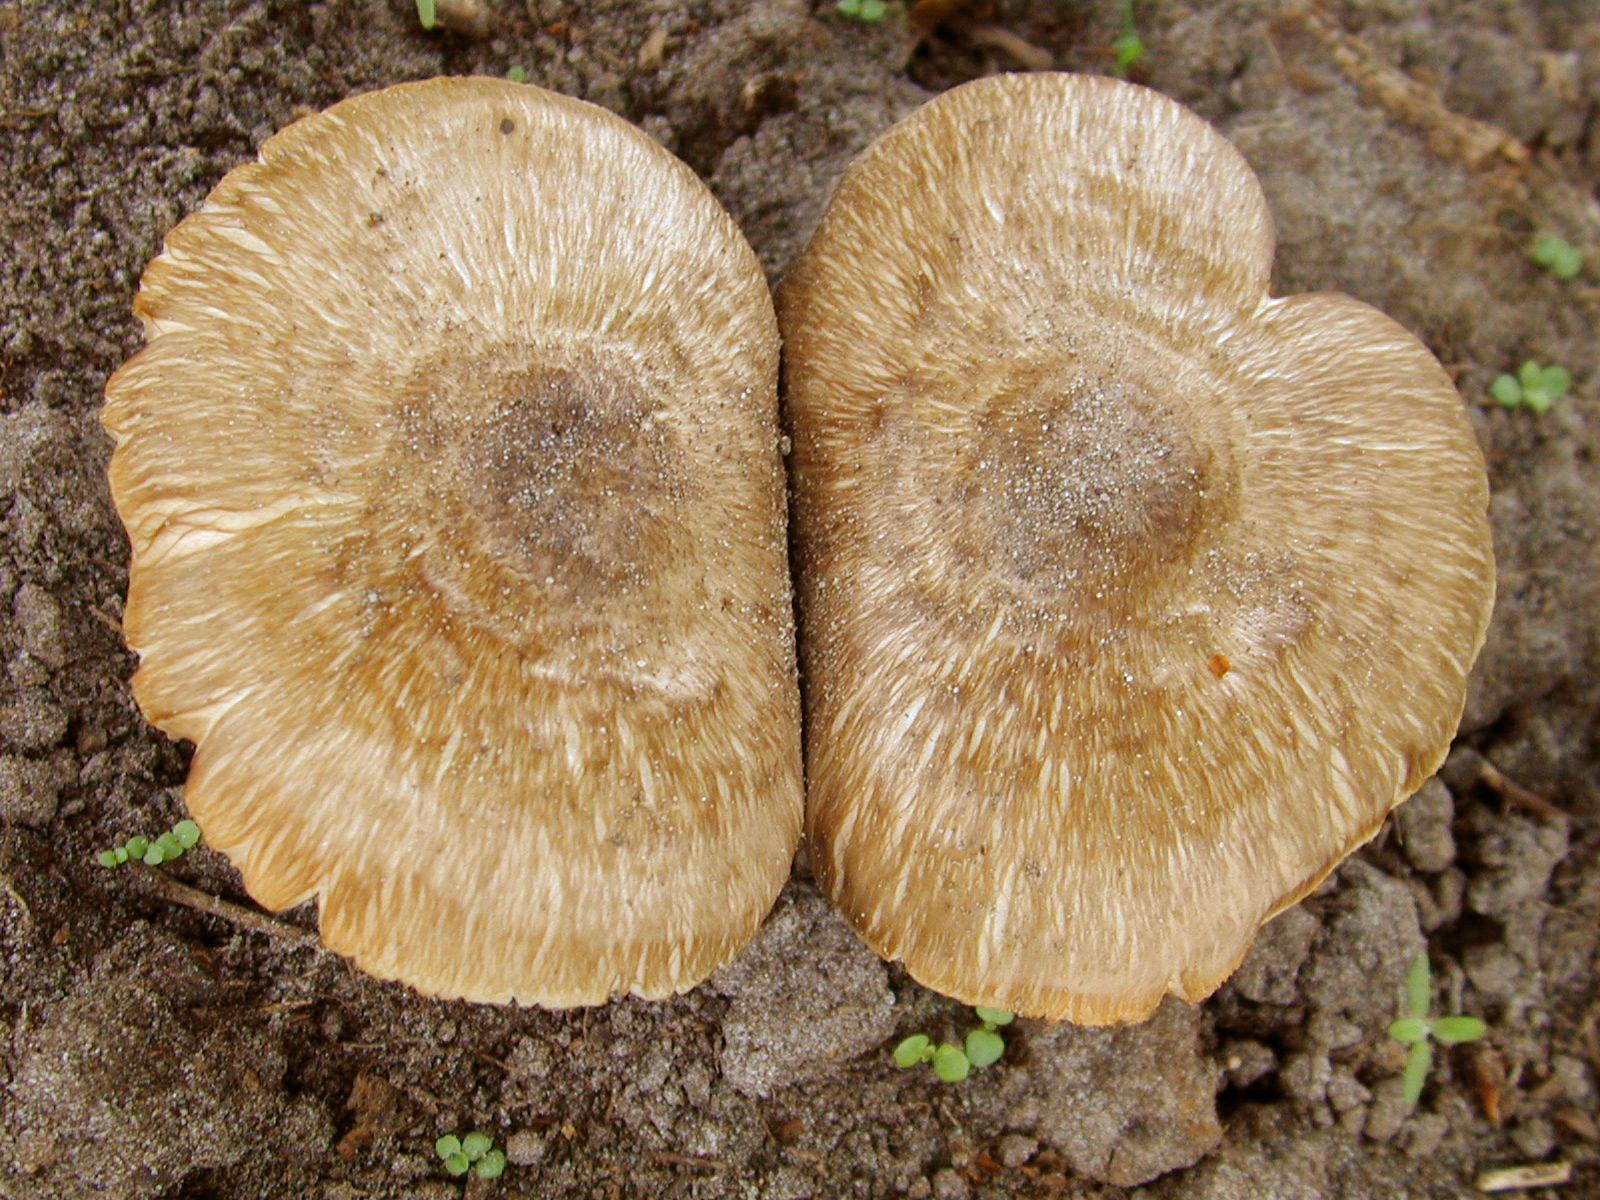 Imageafter Images Mushroom Mushrooms Toadstool Toadstools Paddo 